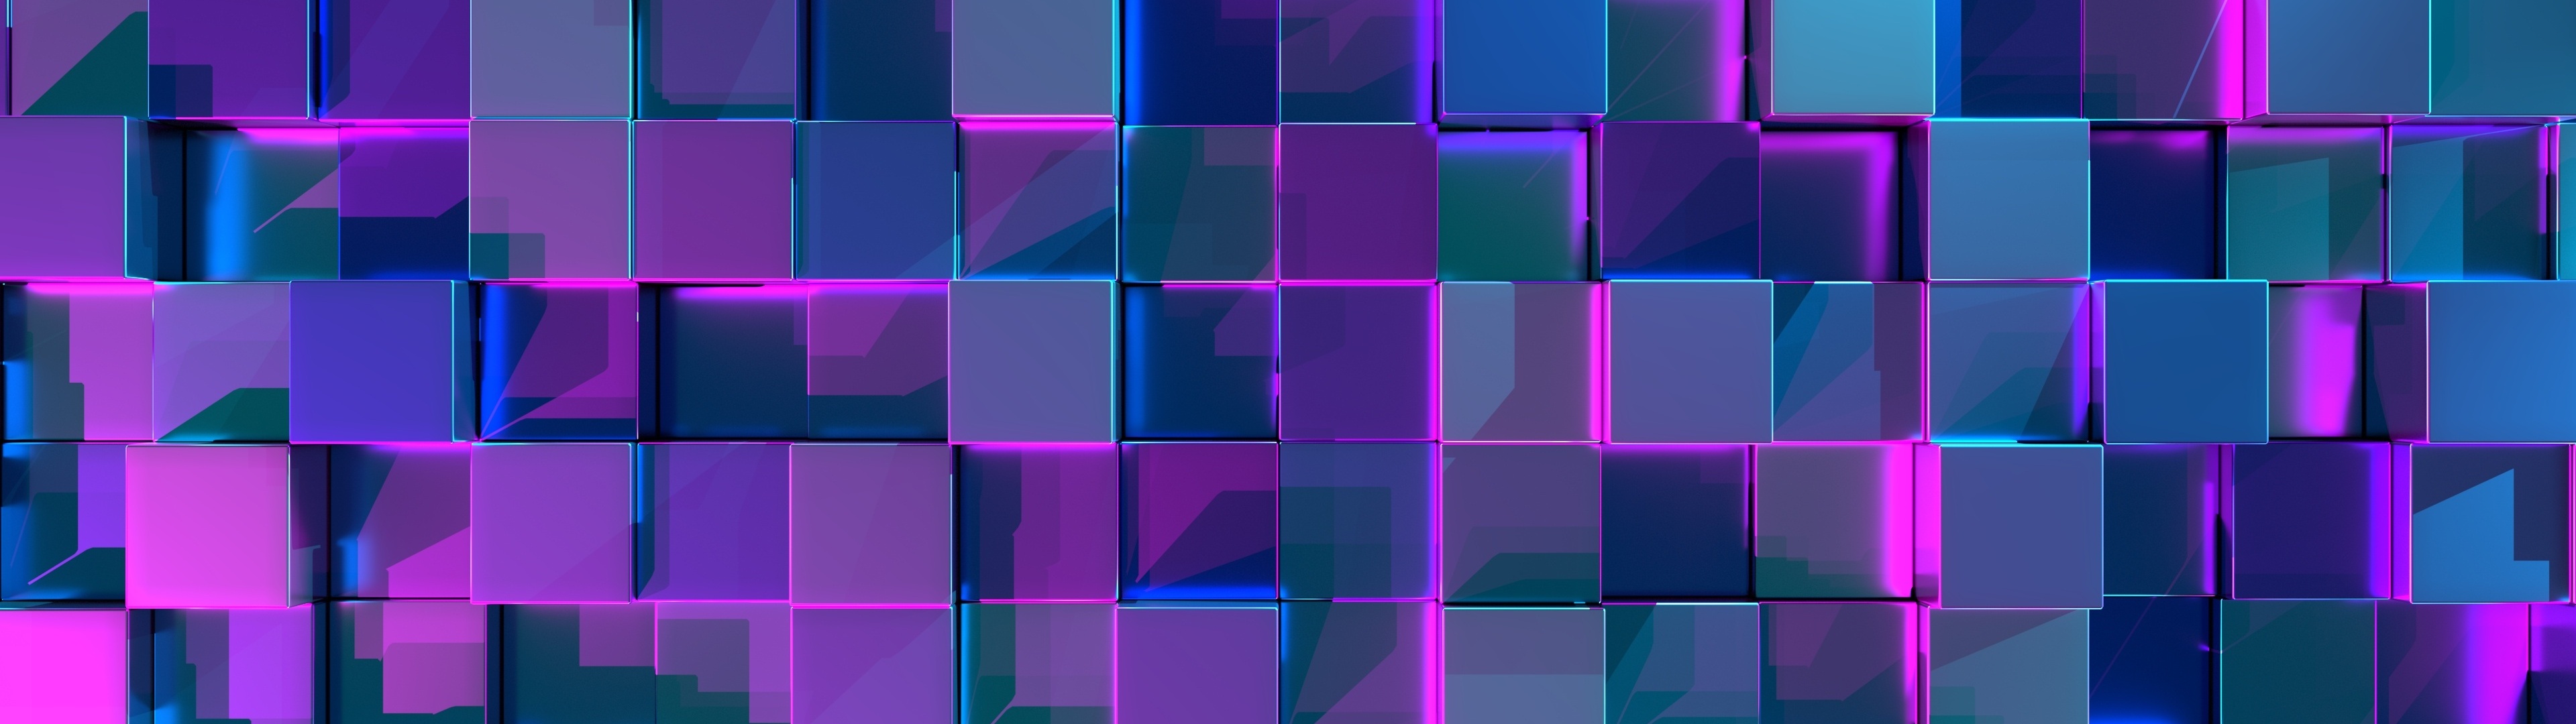 3d Cube Wallpaper Hd Image Num 67